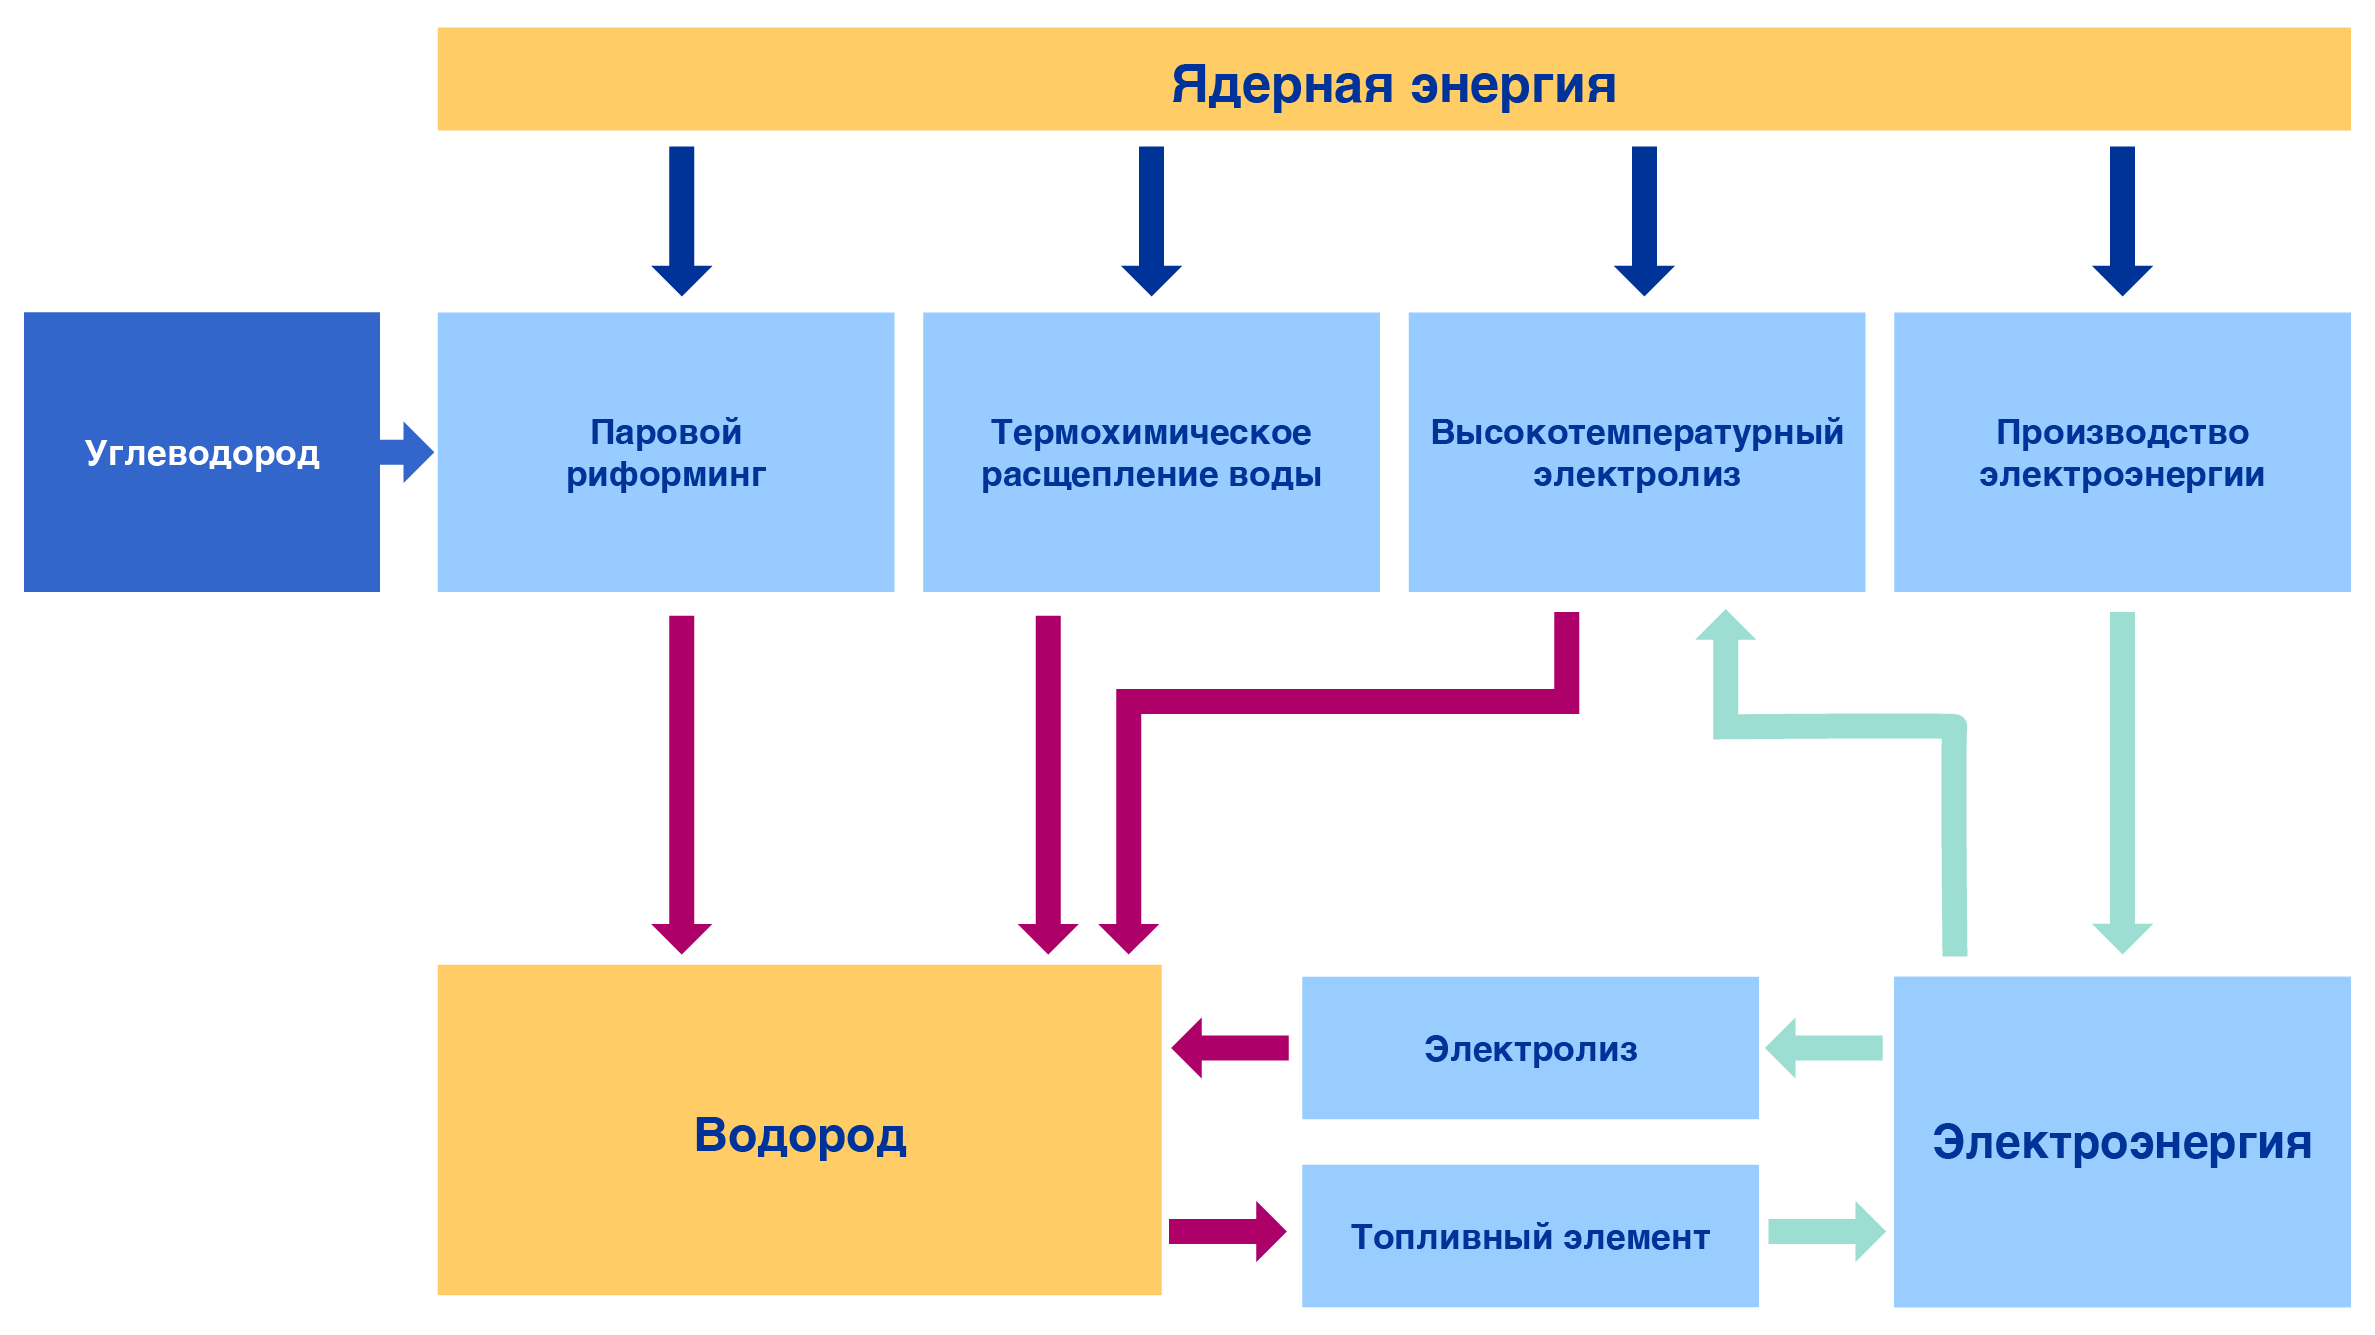 Реферат: Атомная Энергетика Украины. Основные проблемы и перспективы развития